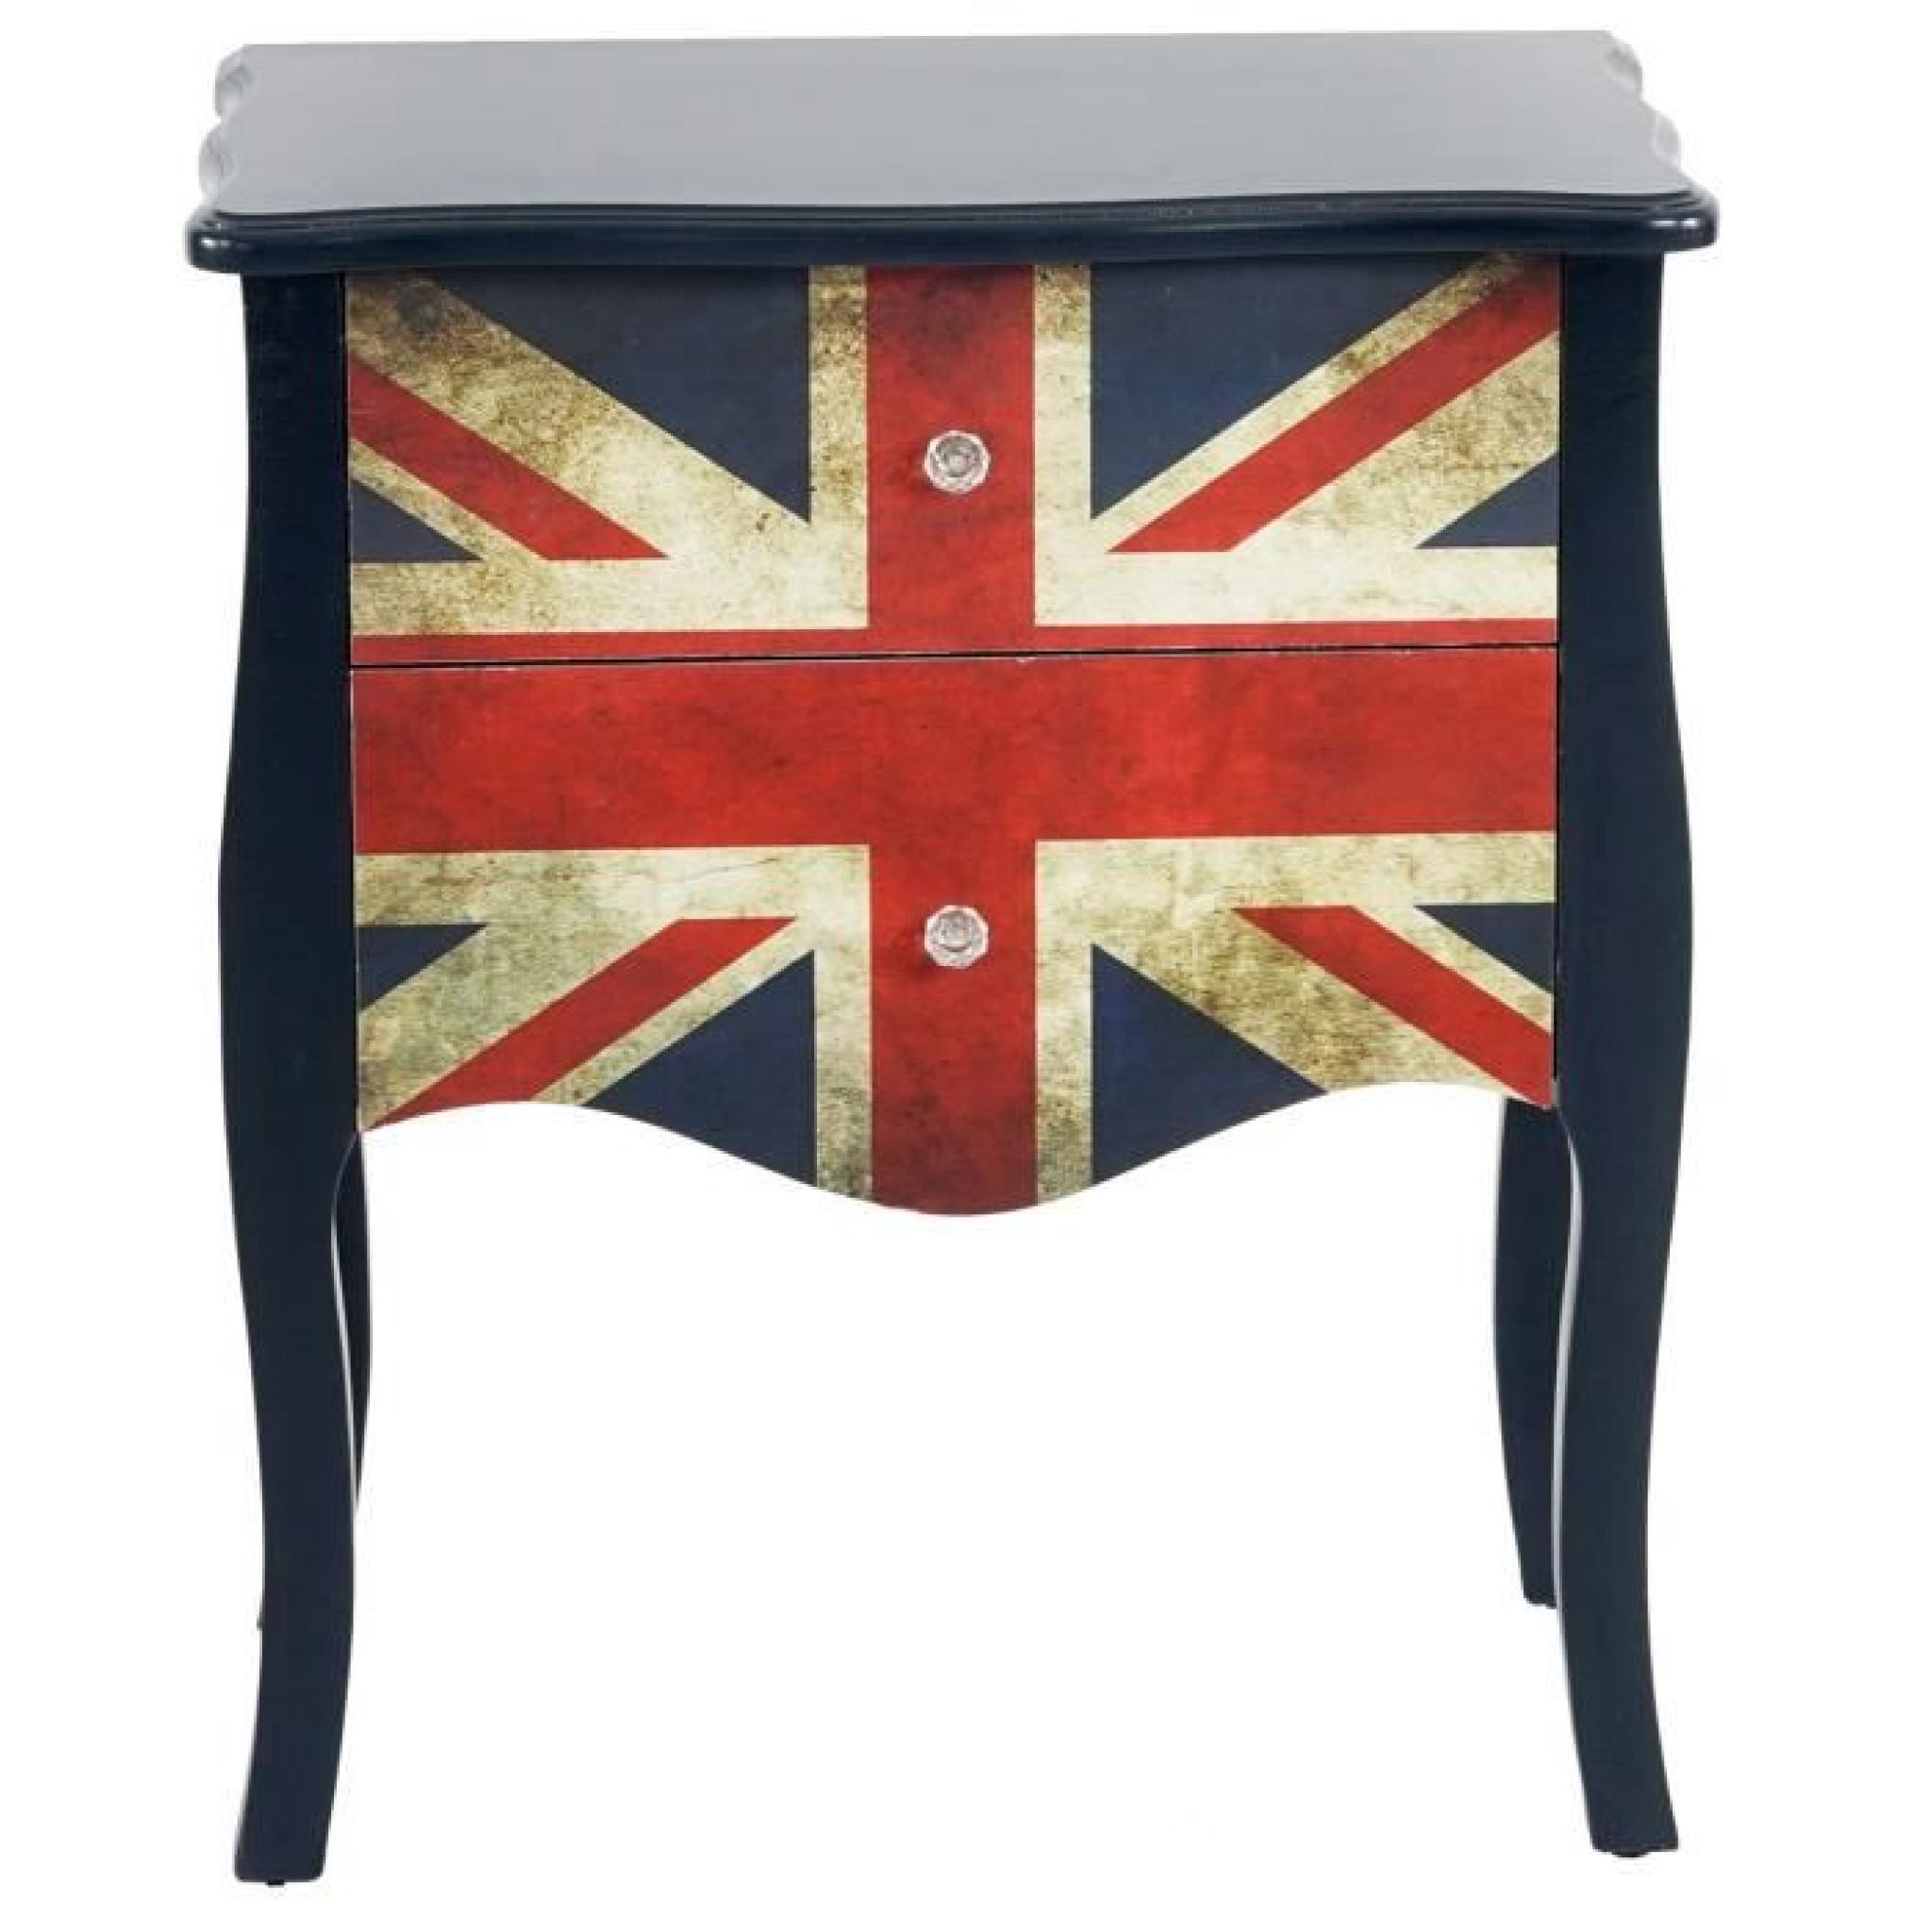 Commode Marne armoire table d'appoint chevet,70x60x36cm, motif Union Jack. pas cher